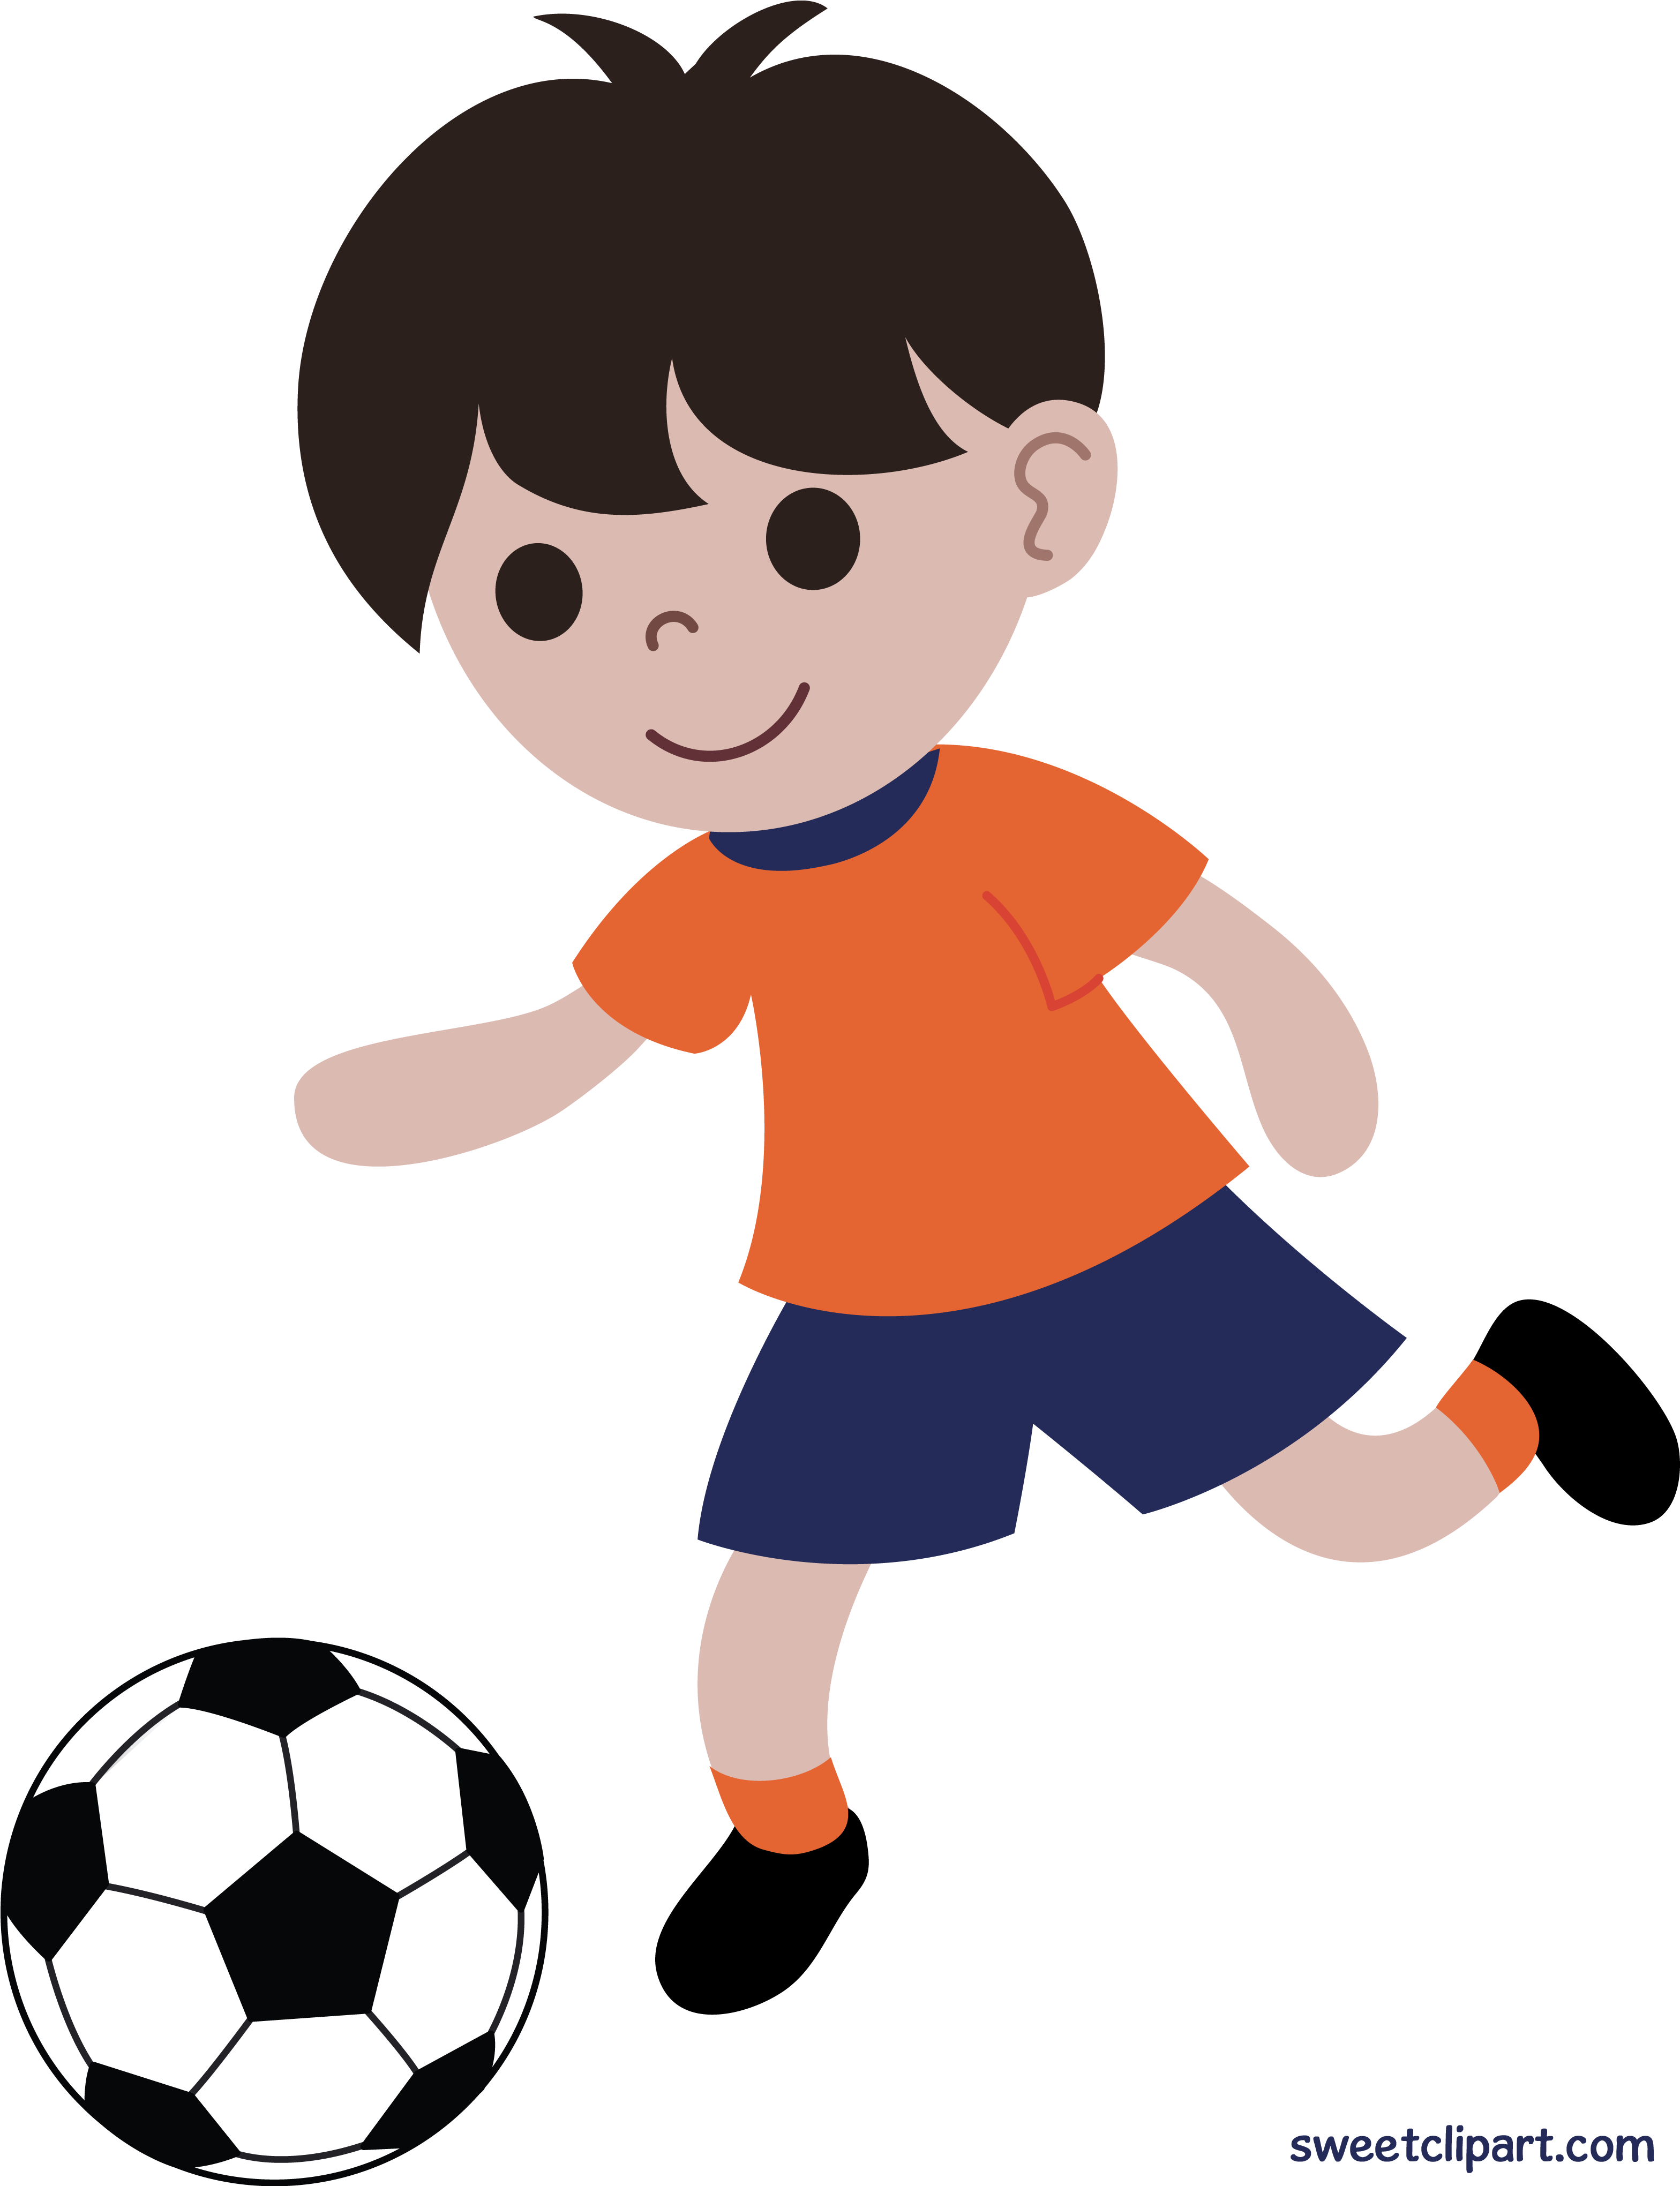 Игры нарисованный мальчик. Мальчик с мячом. Мальчик играющий в мяч. Футбол мультяшный. Мальчик играет в футбол.